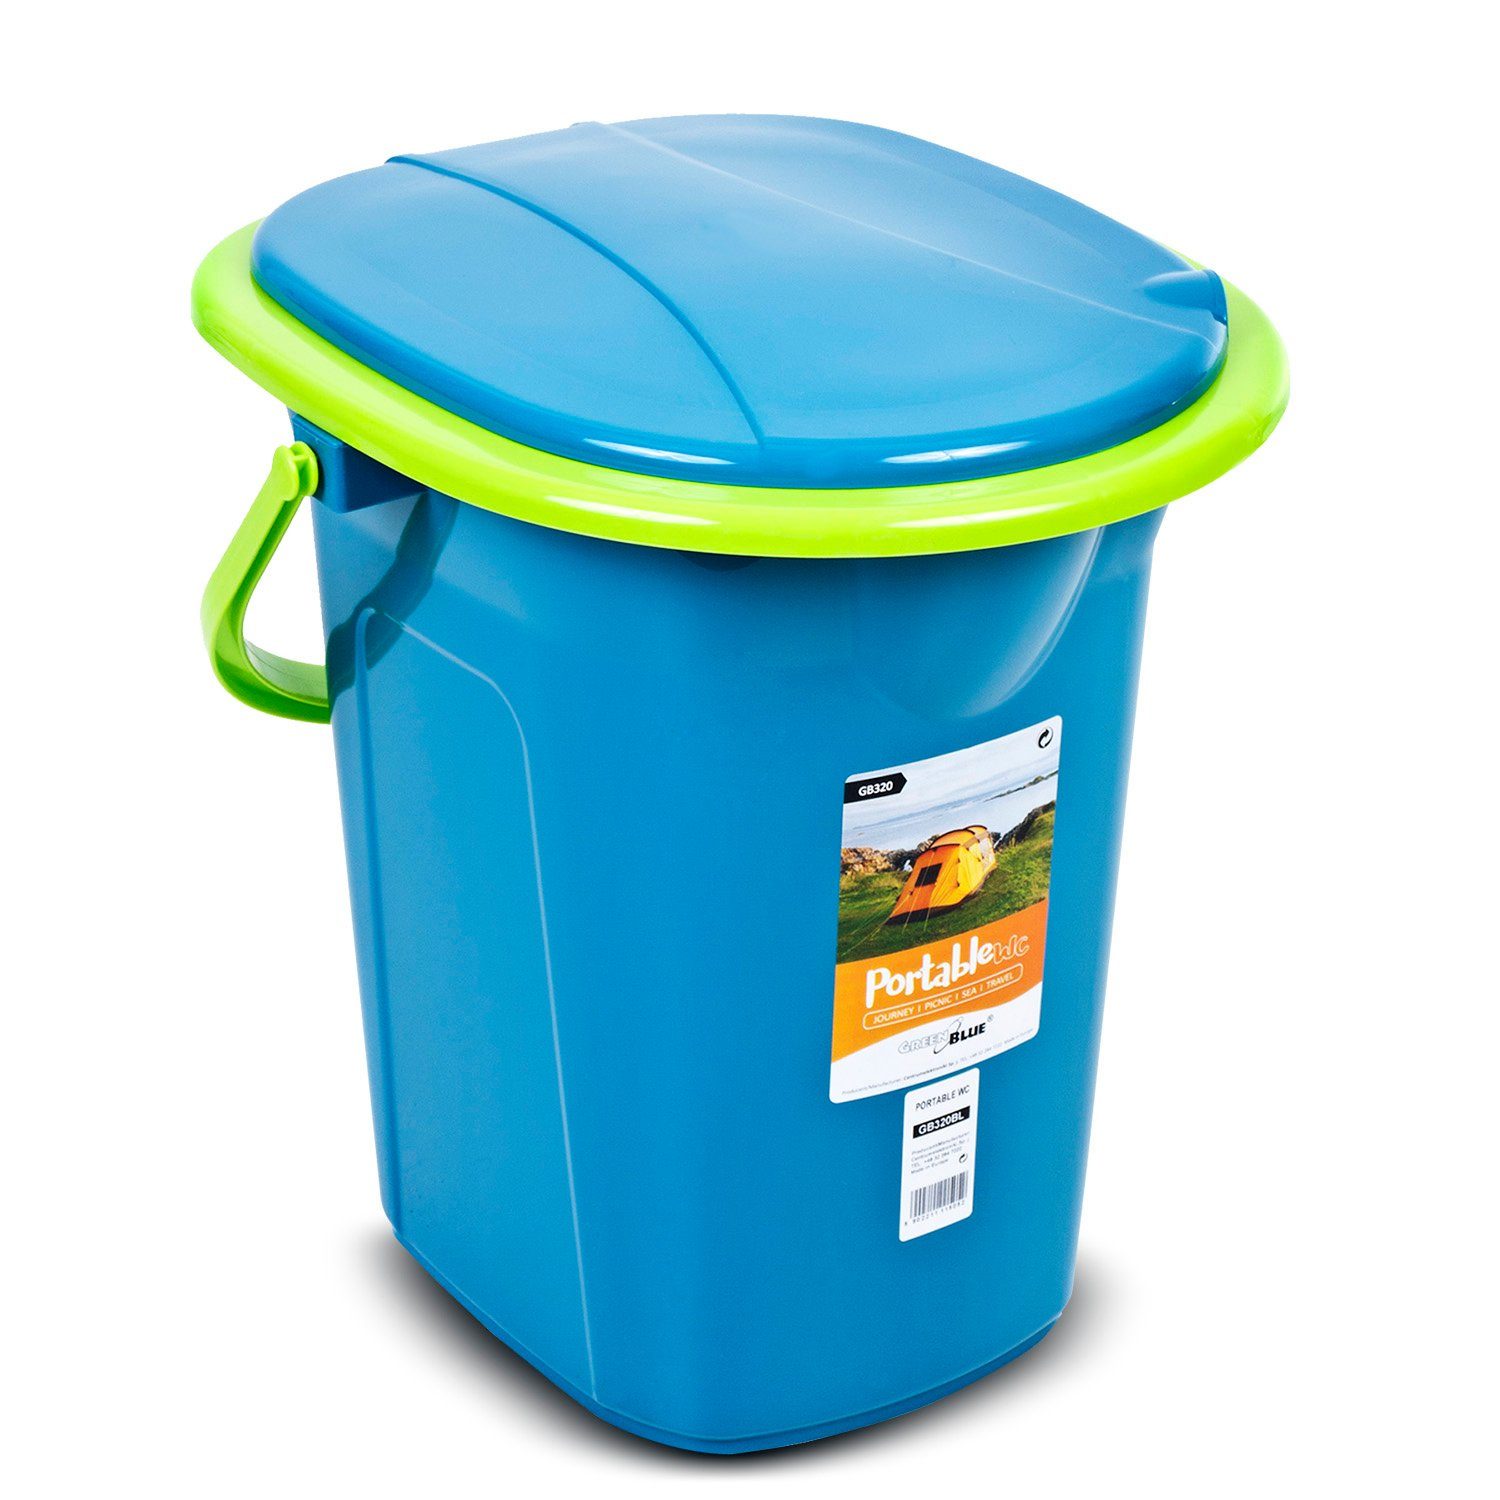 GreenBlue Campingtoilette GB320, mit Tragegriff / Toilettenpapierhalter und Auskipp-Hilfe Türkis-Limone